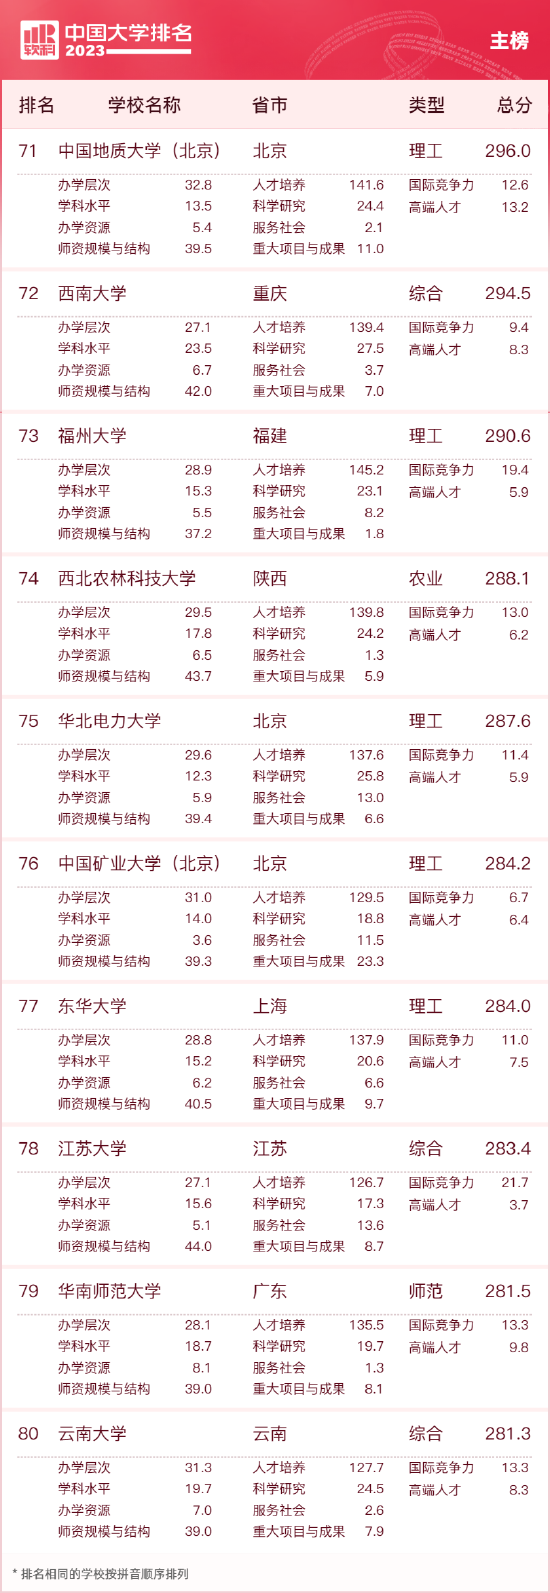 2023中国大学排名公布 清华北大浙大连续9年蝉联三甲 第8张